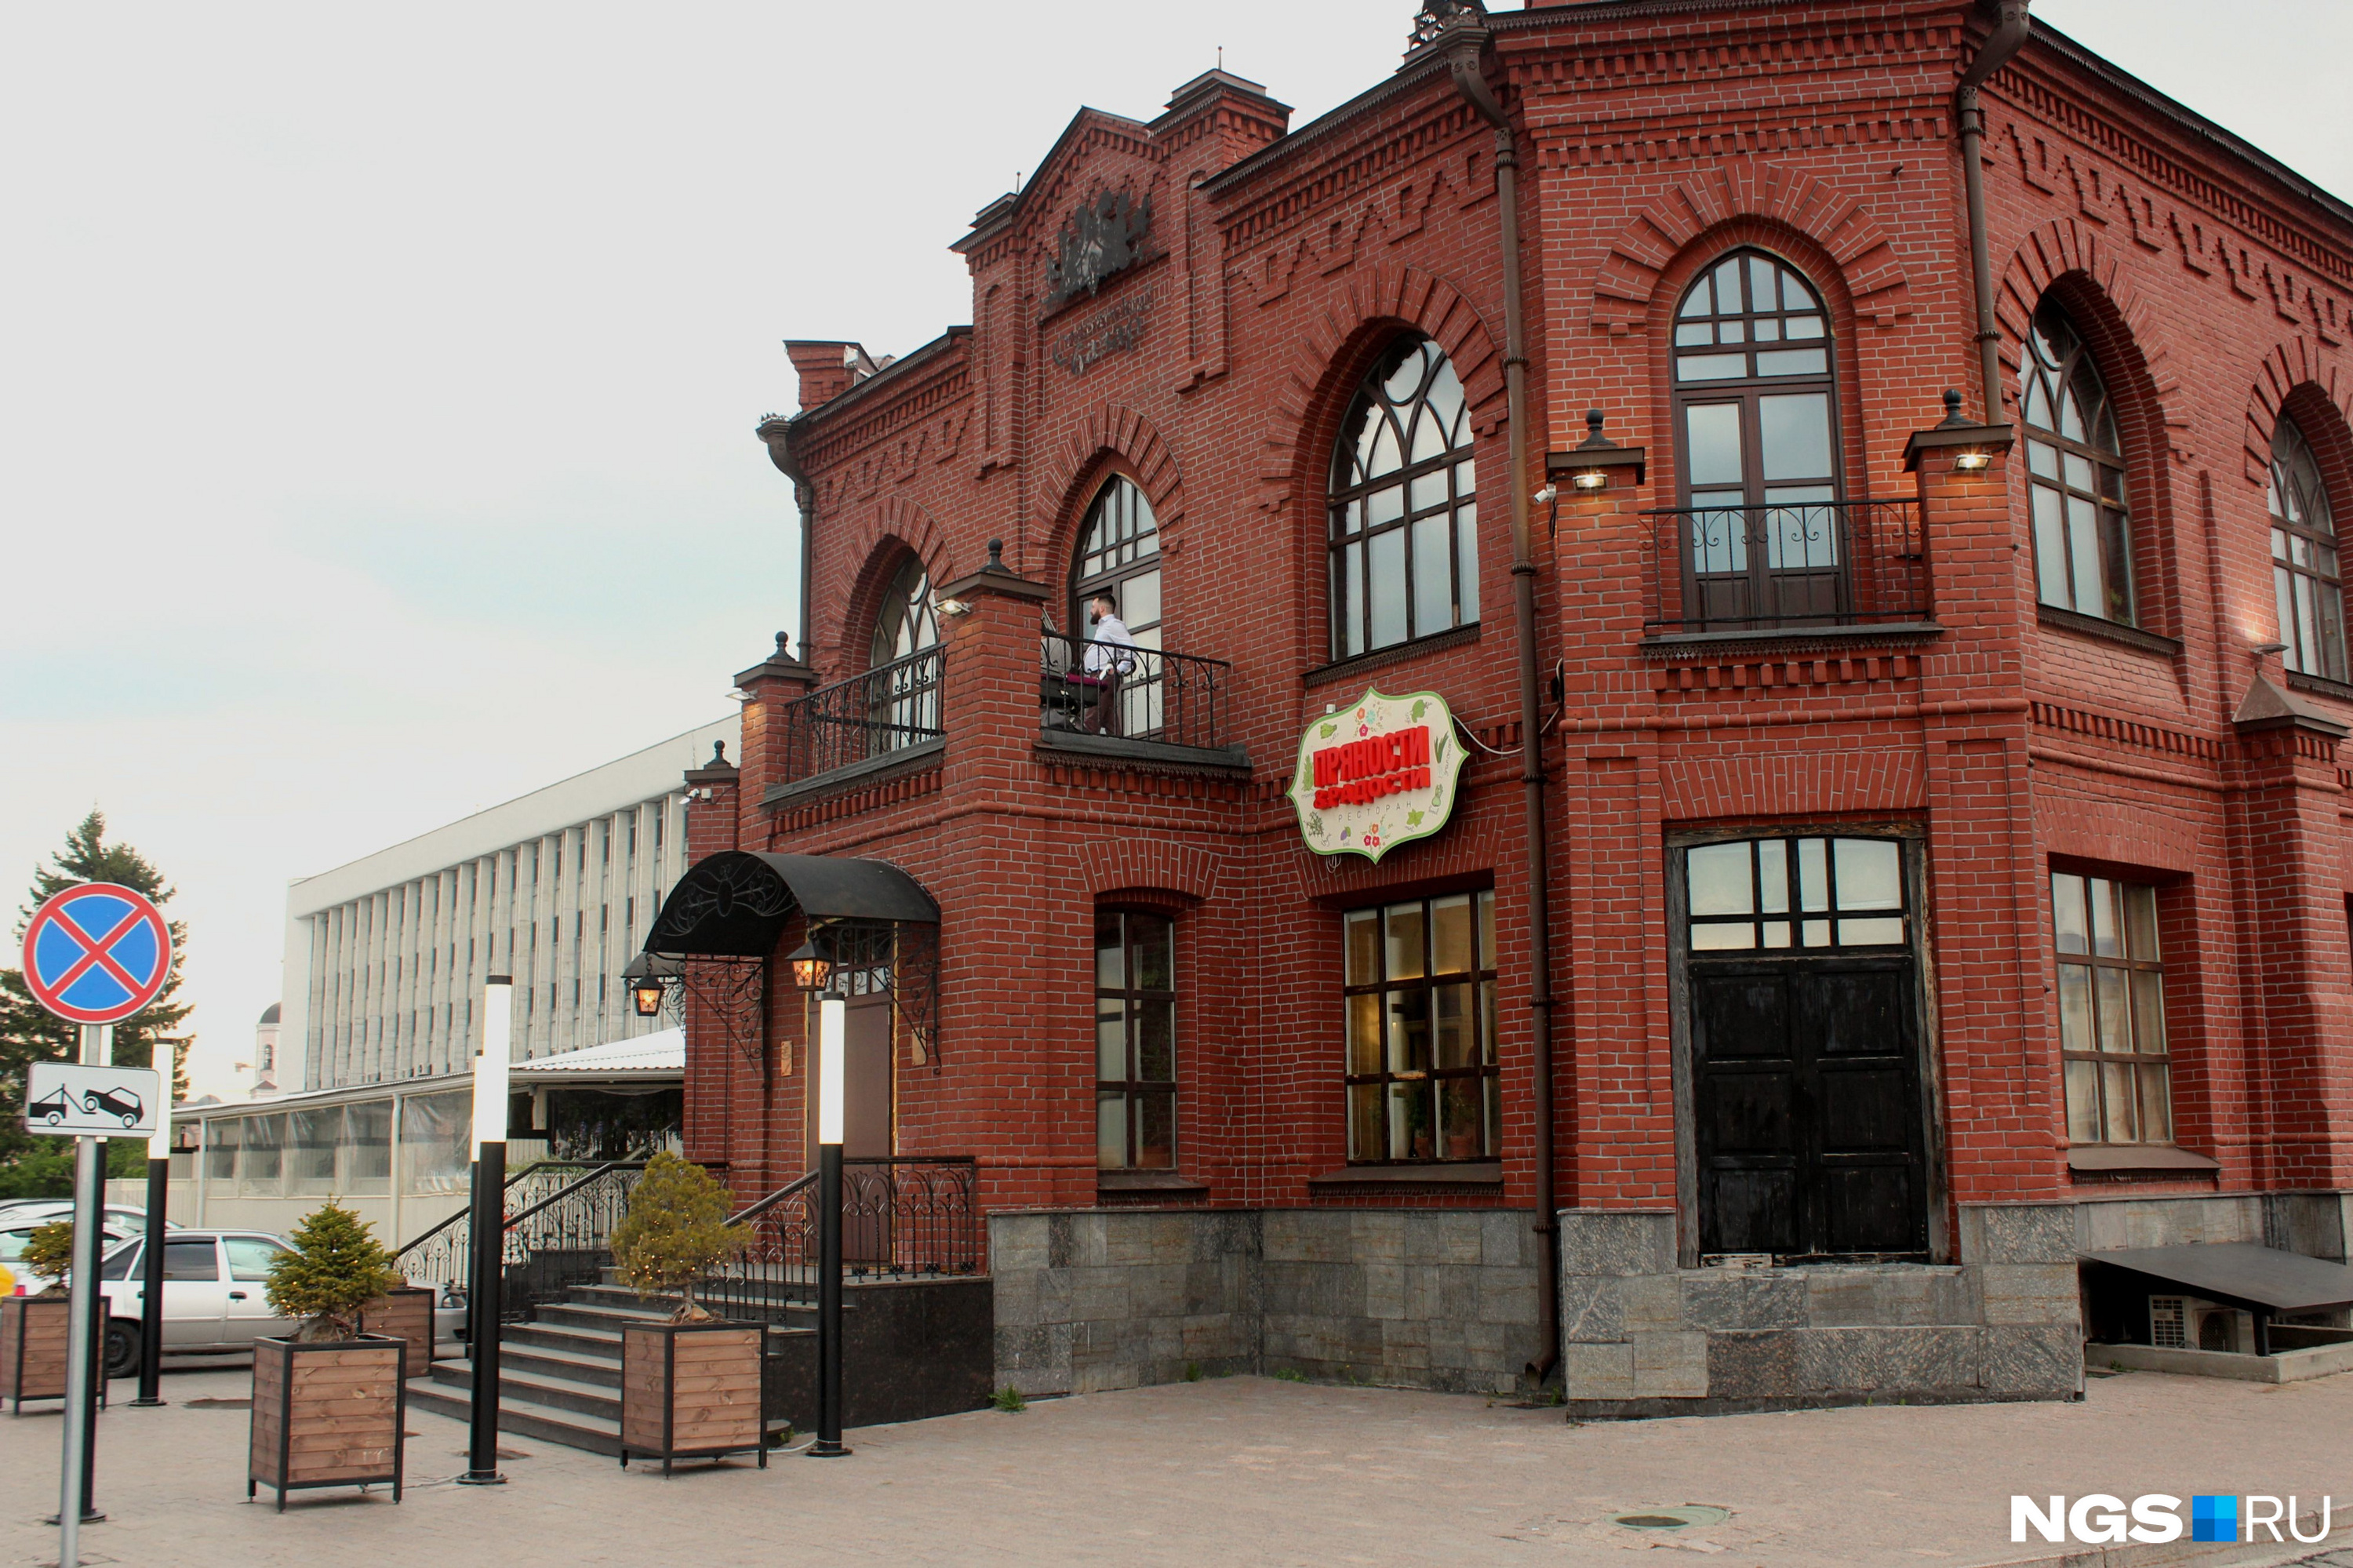 На месте самого престижного когда-то томского ресторана теперь работает сетевое московское заведение